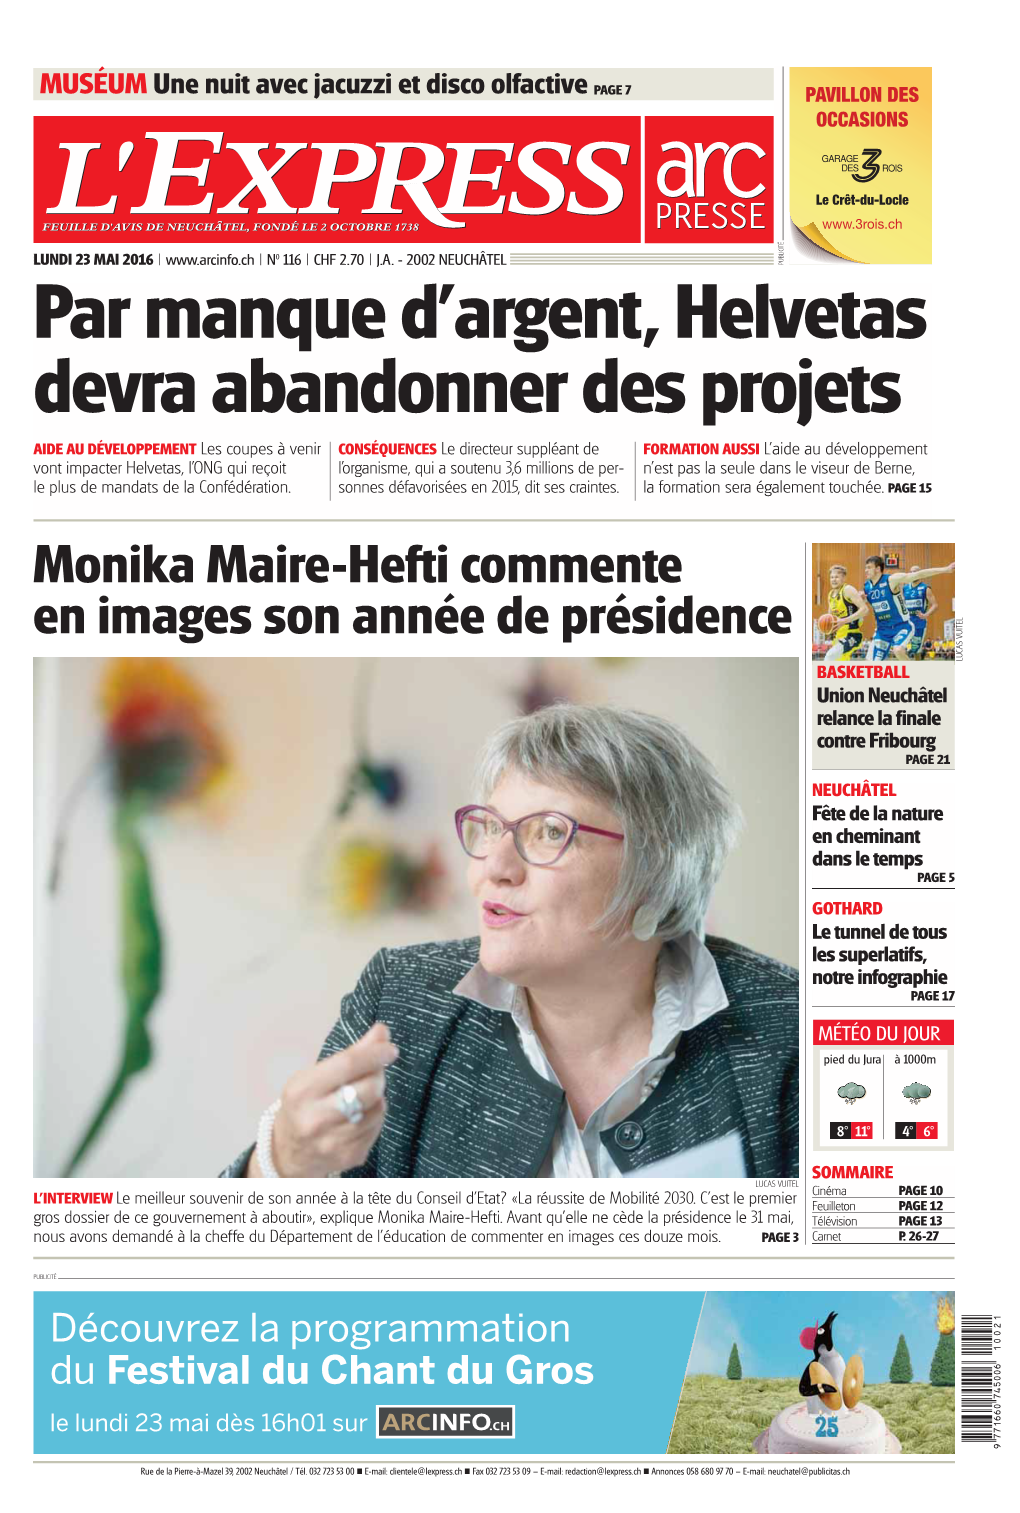 Monika Maire-Hefti Commente En Images Son Année De Présidence